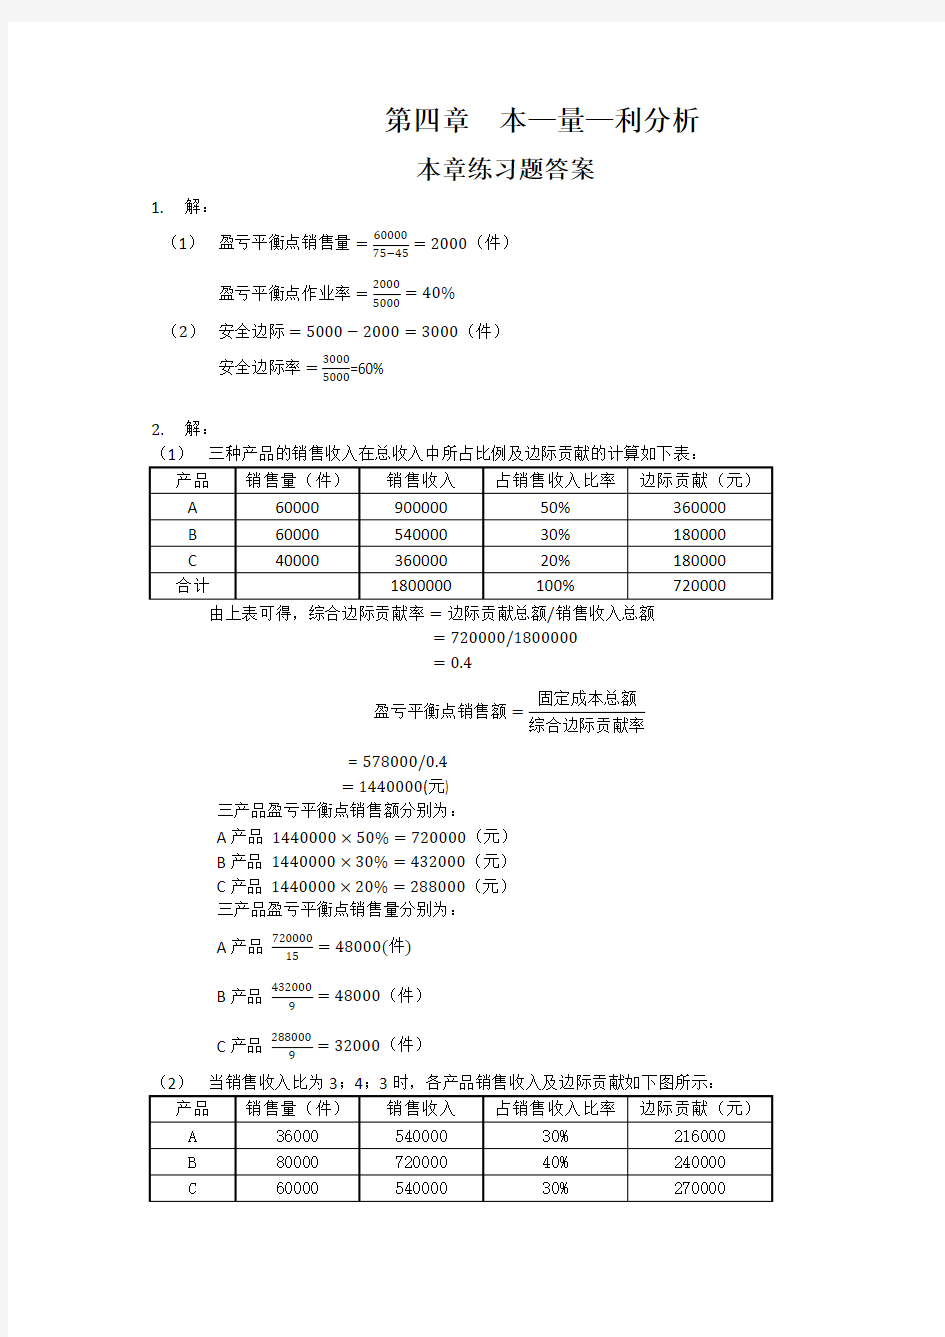 刘运国《管理会计学》教材习题及答案   第四章  习题答案